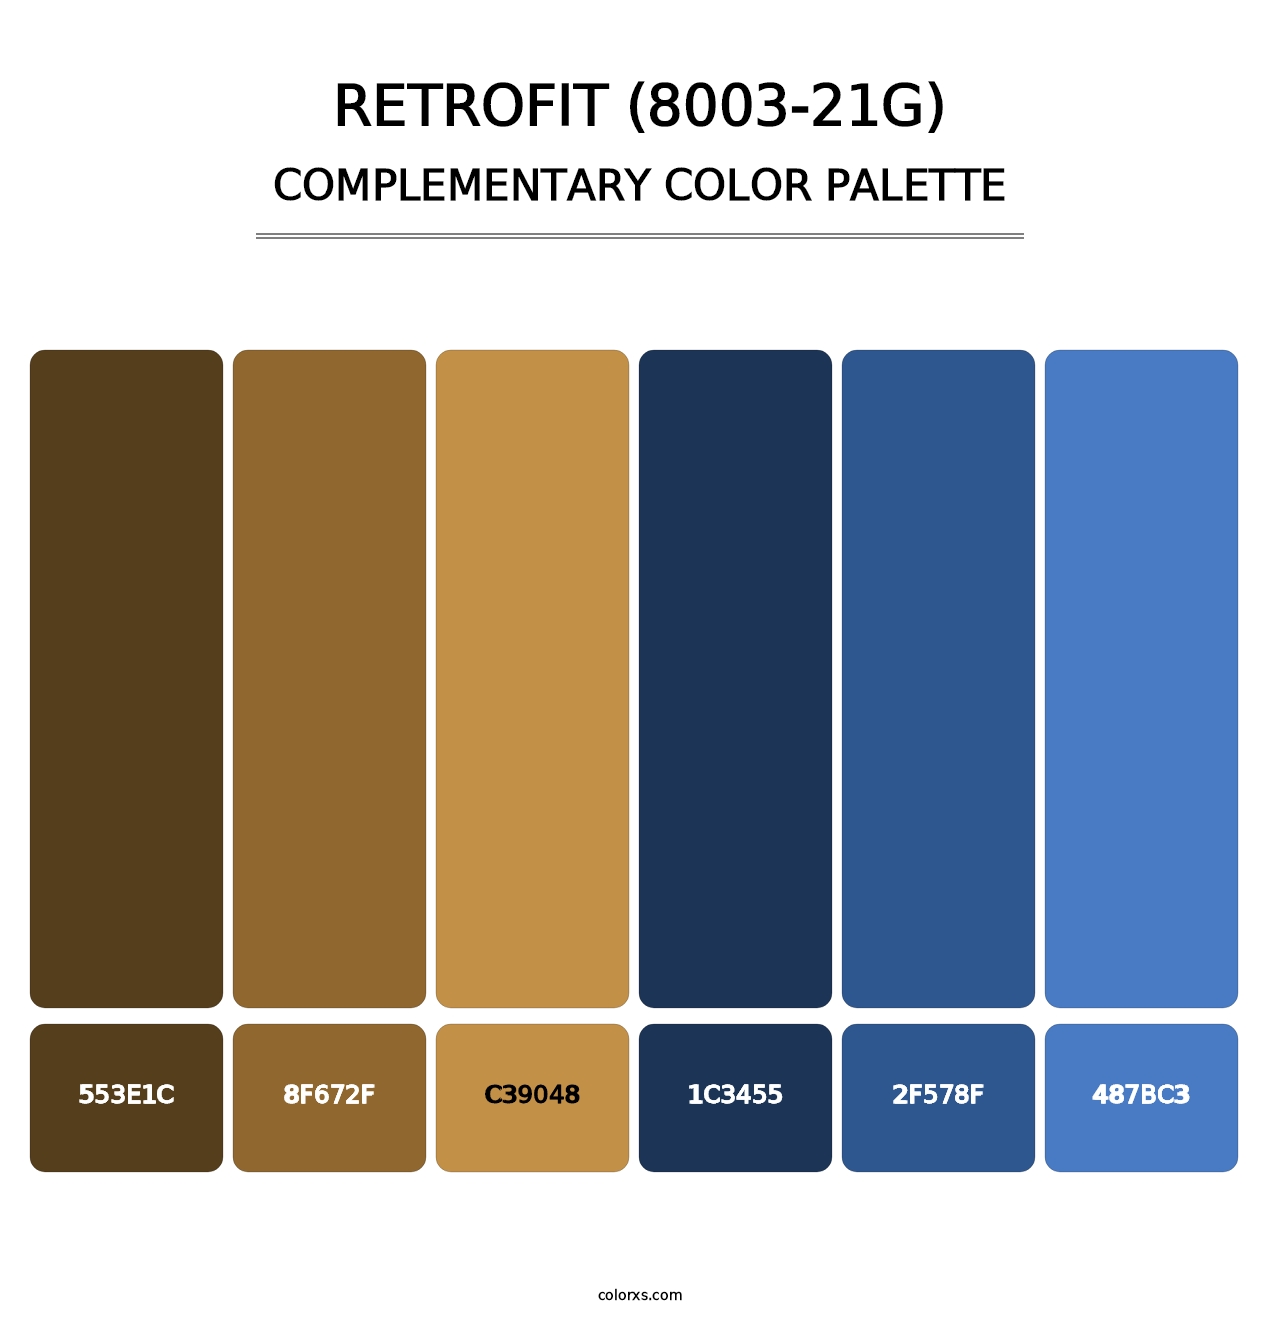 Retrofit (8003-21G) - Complementary Color Palette